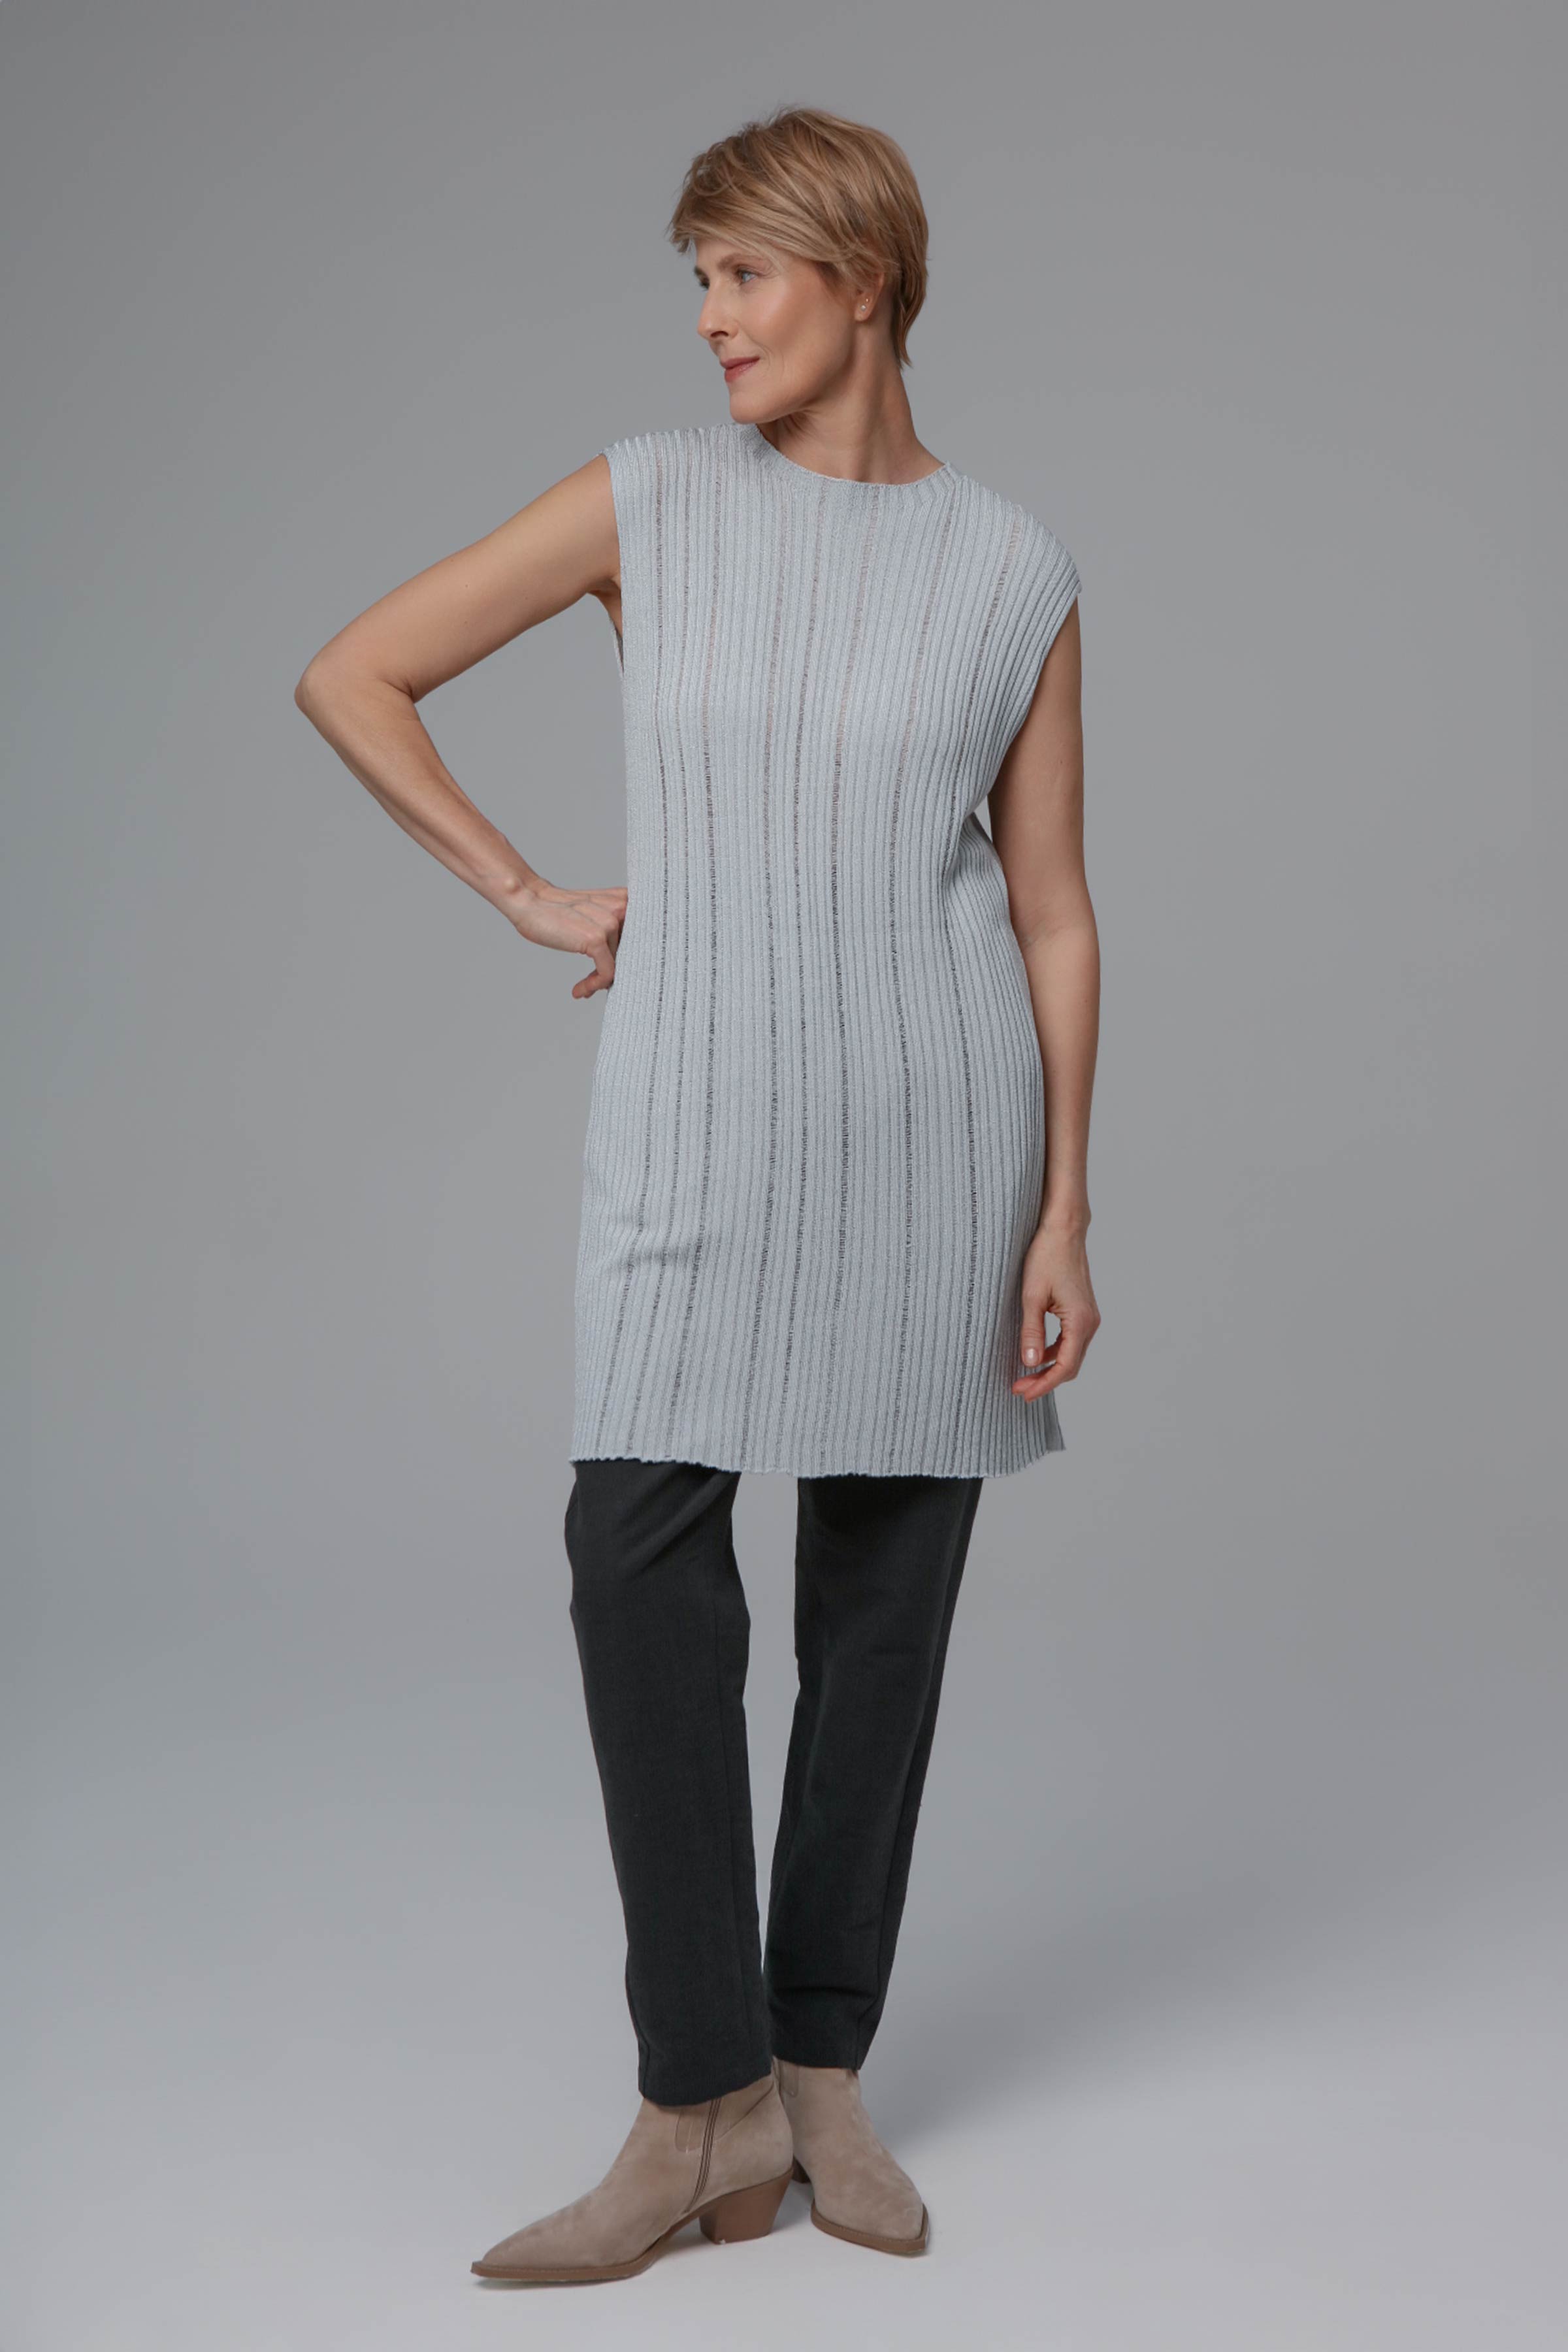 Платье Ластичное 10 Серый (grise) от Lesel (Лесель)! Заказывайте по ✆ 8 (800) 777 02 37